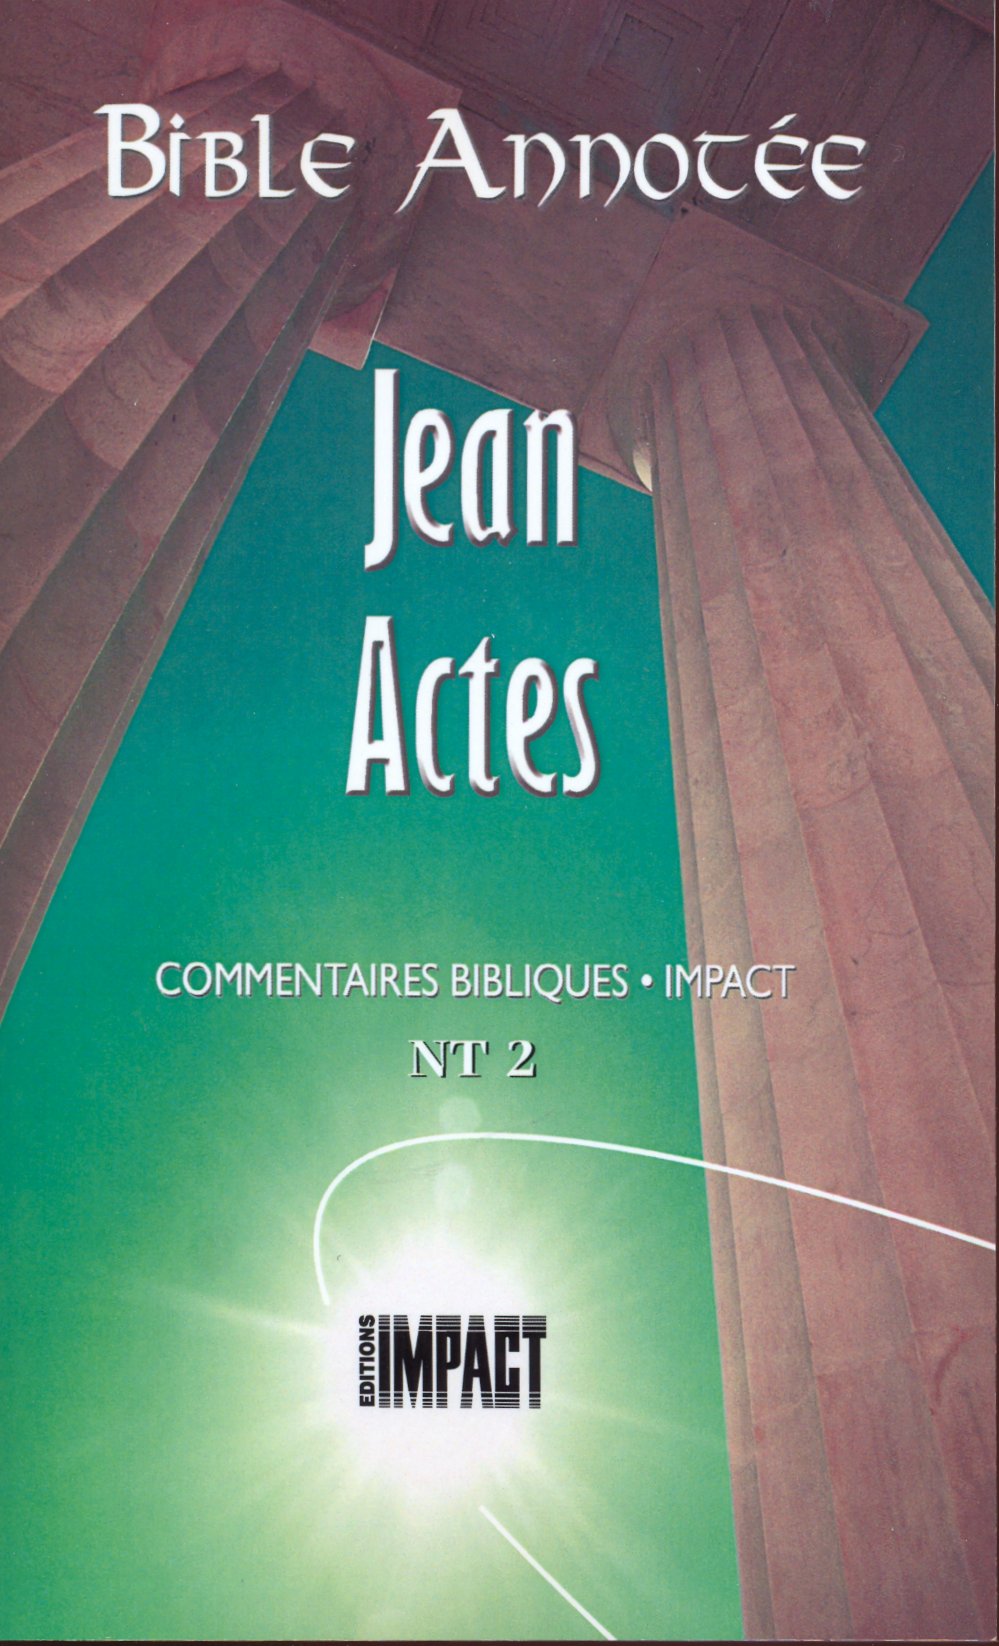 Bible Annotée (La), Jean Actes - Commentaires bibliques Impact NT 2